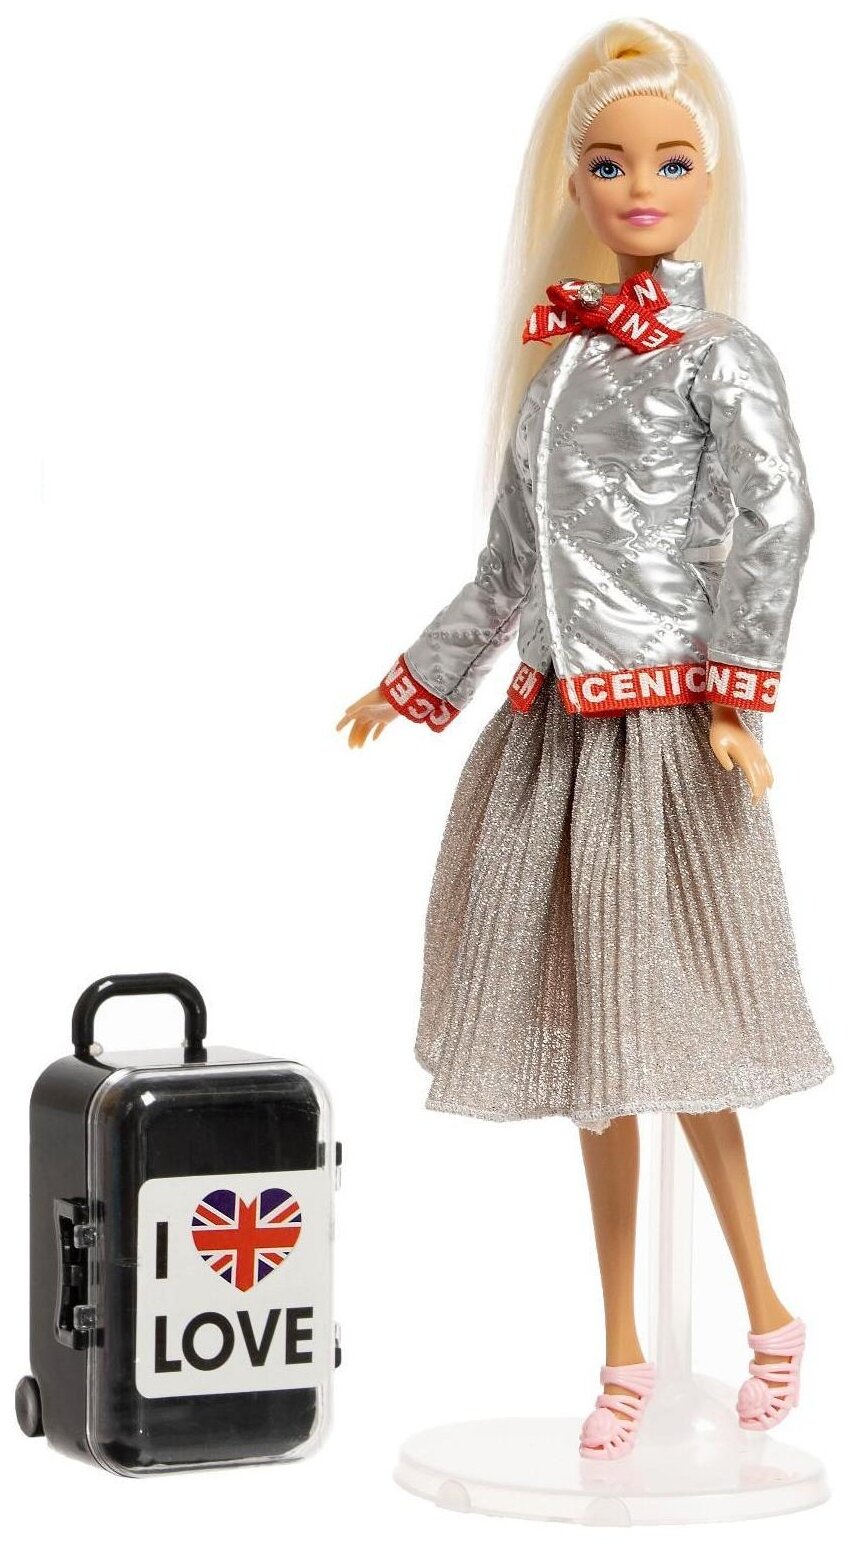 HAPPY VALLEY Кукла с чемоданом "Сандра в Англии", серия Вокруг света SL-05305 5526579